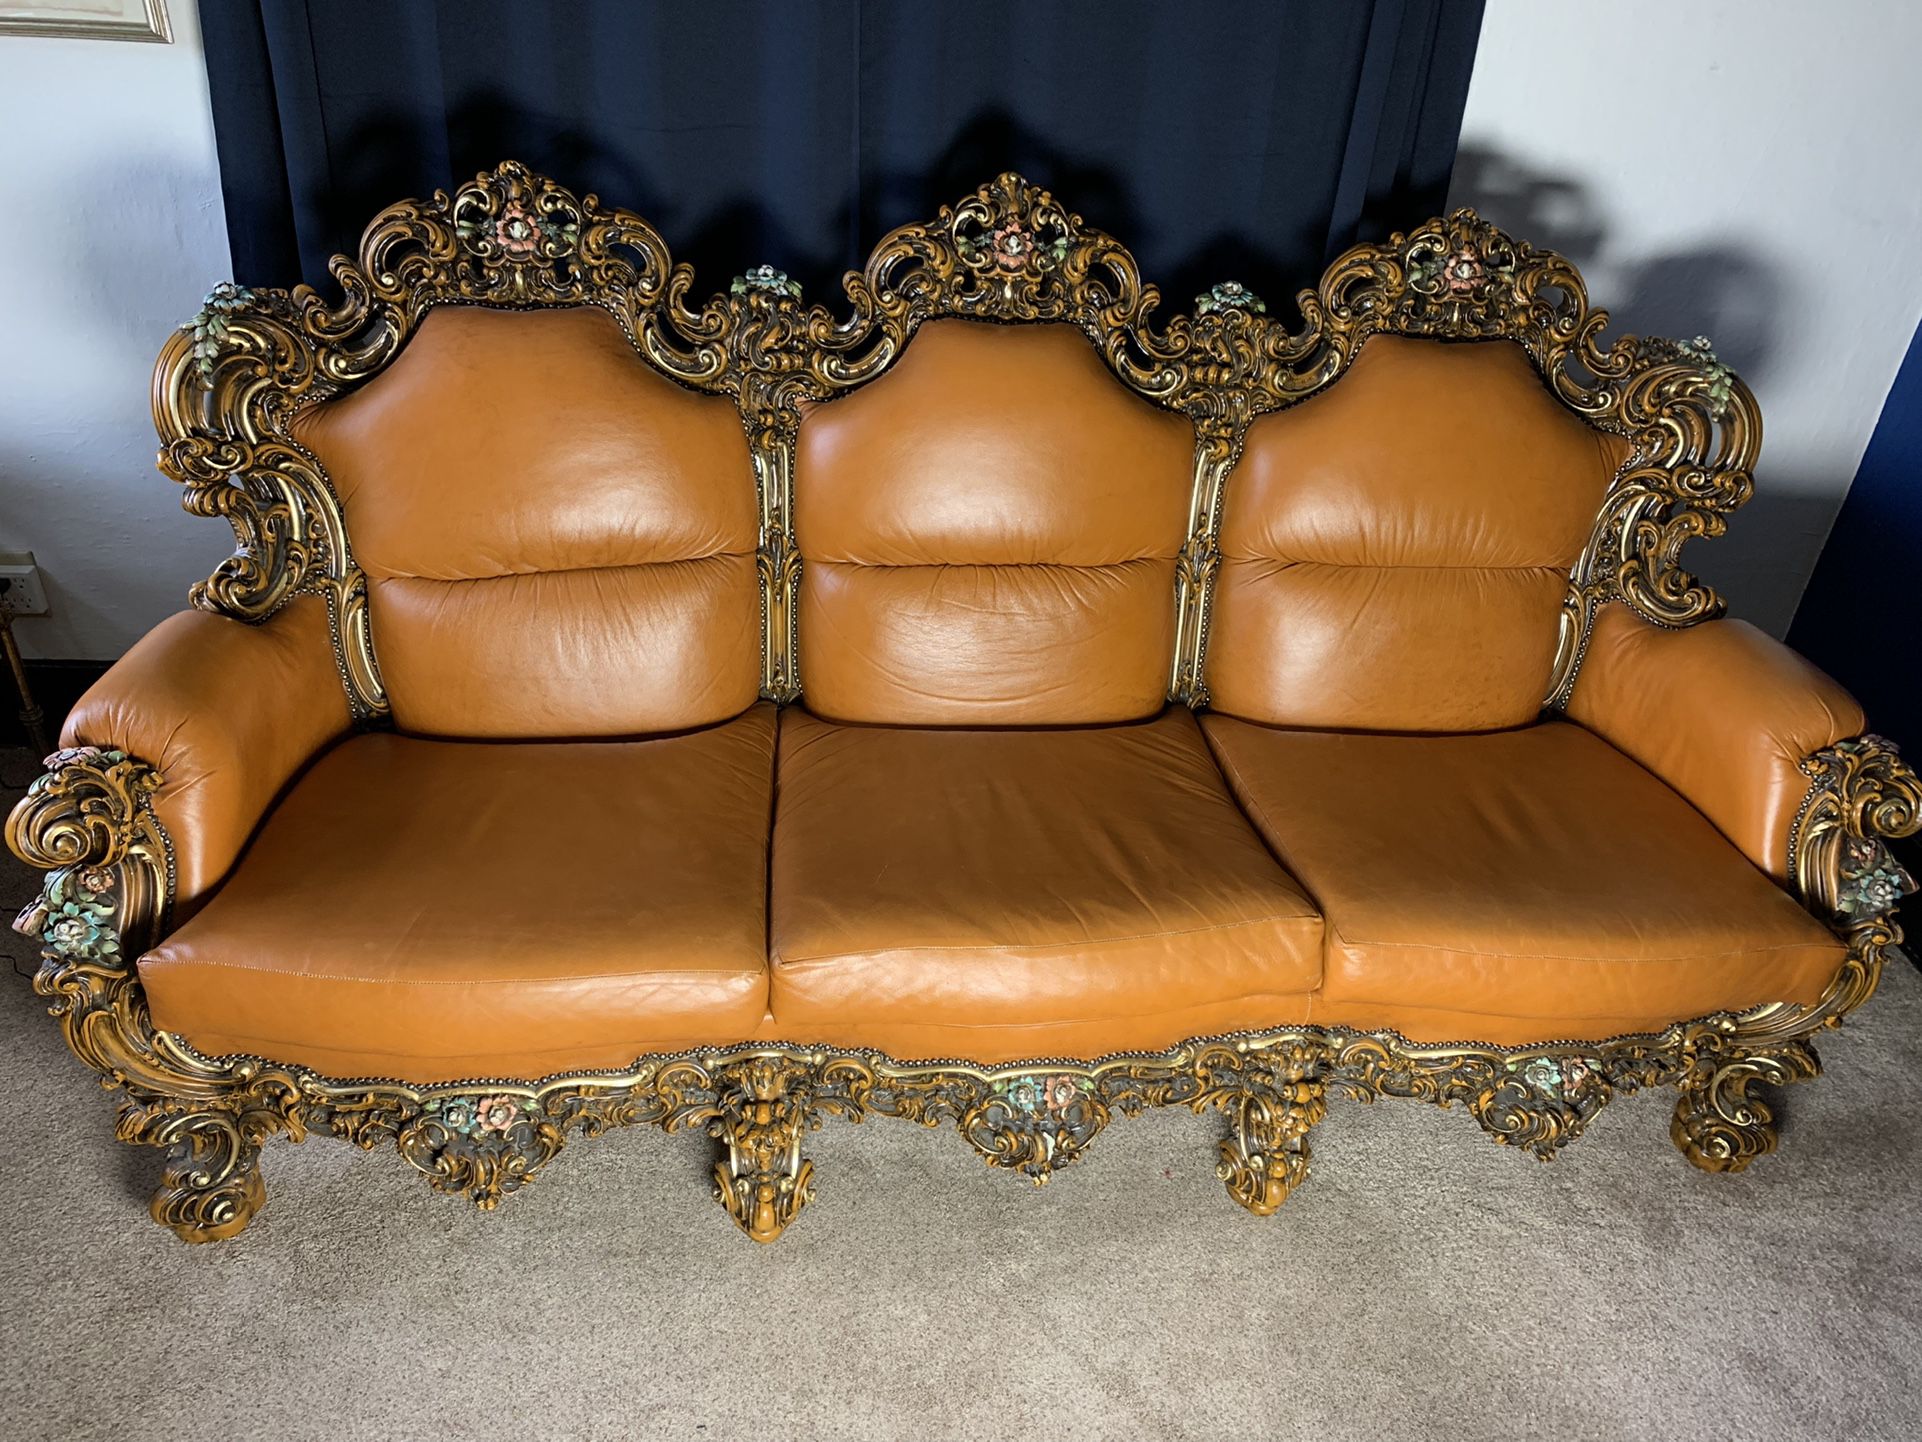 SILIK Italian Leather Sofa